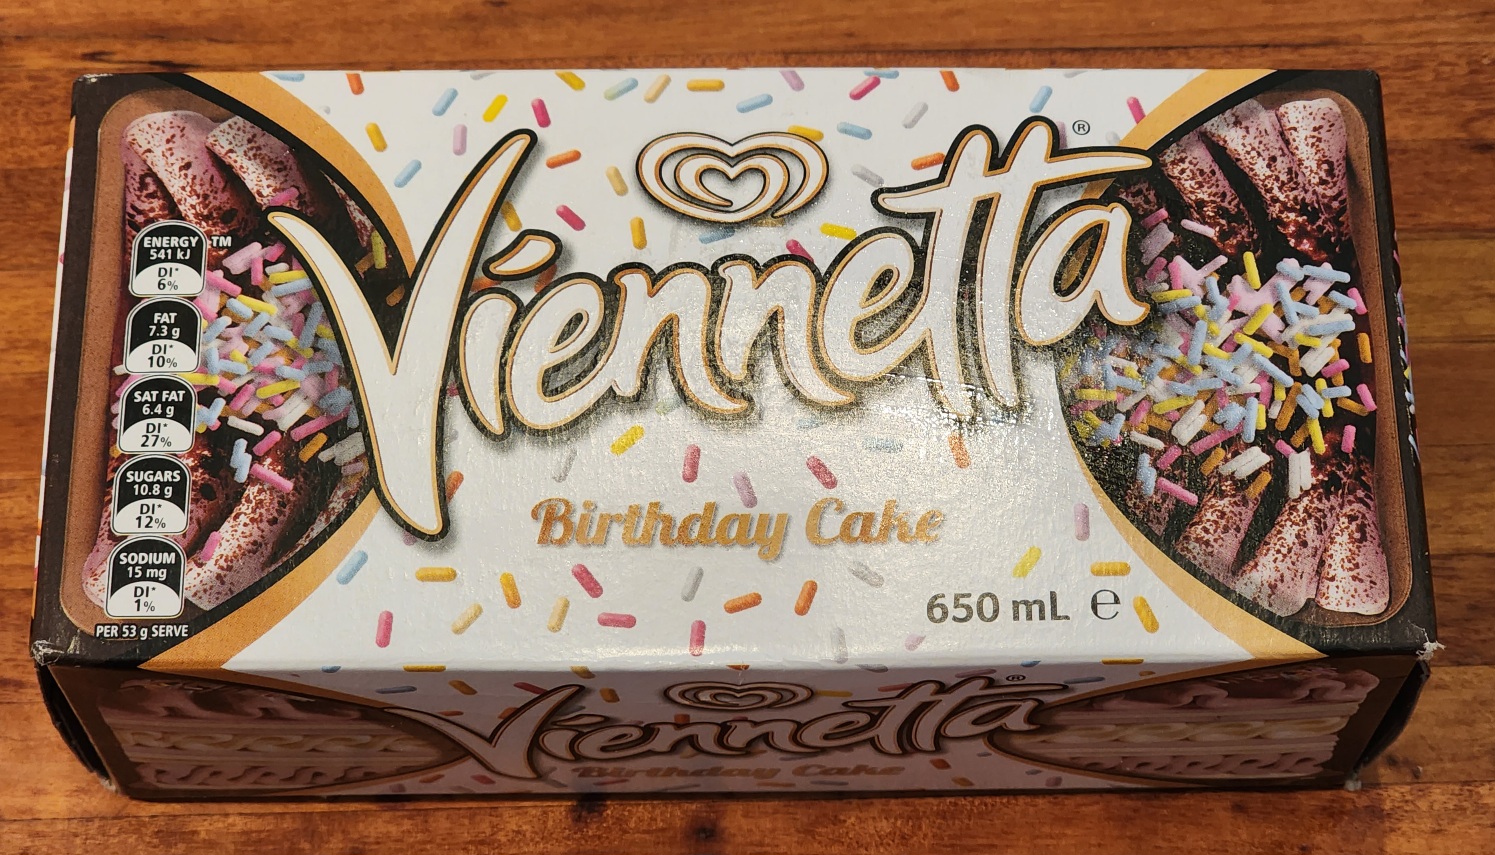 Box of Vienetta Birthday Cake ice cream